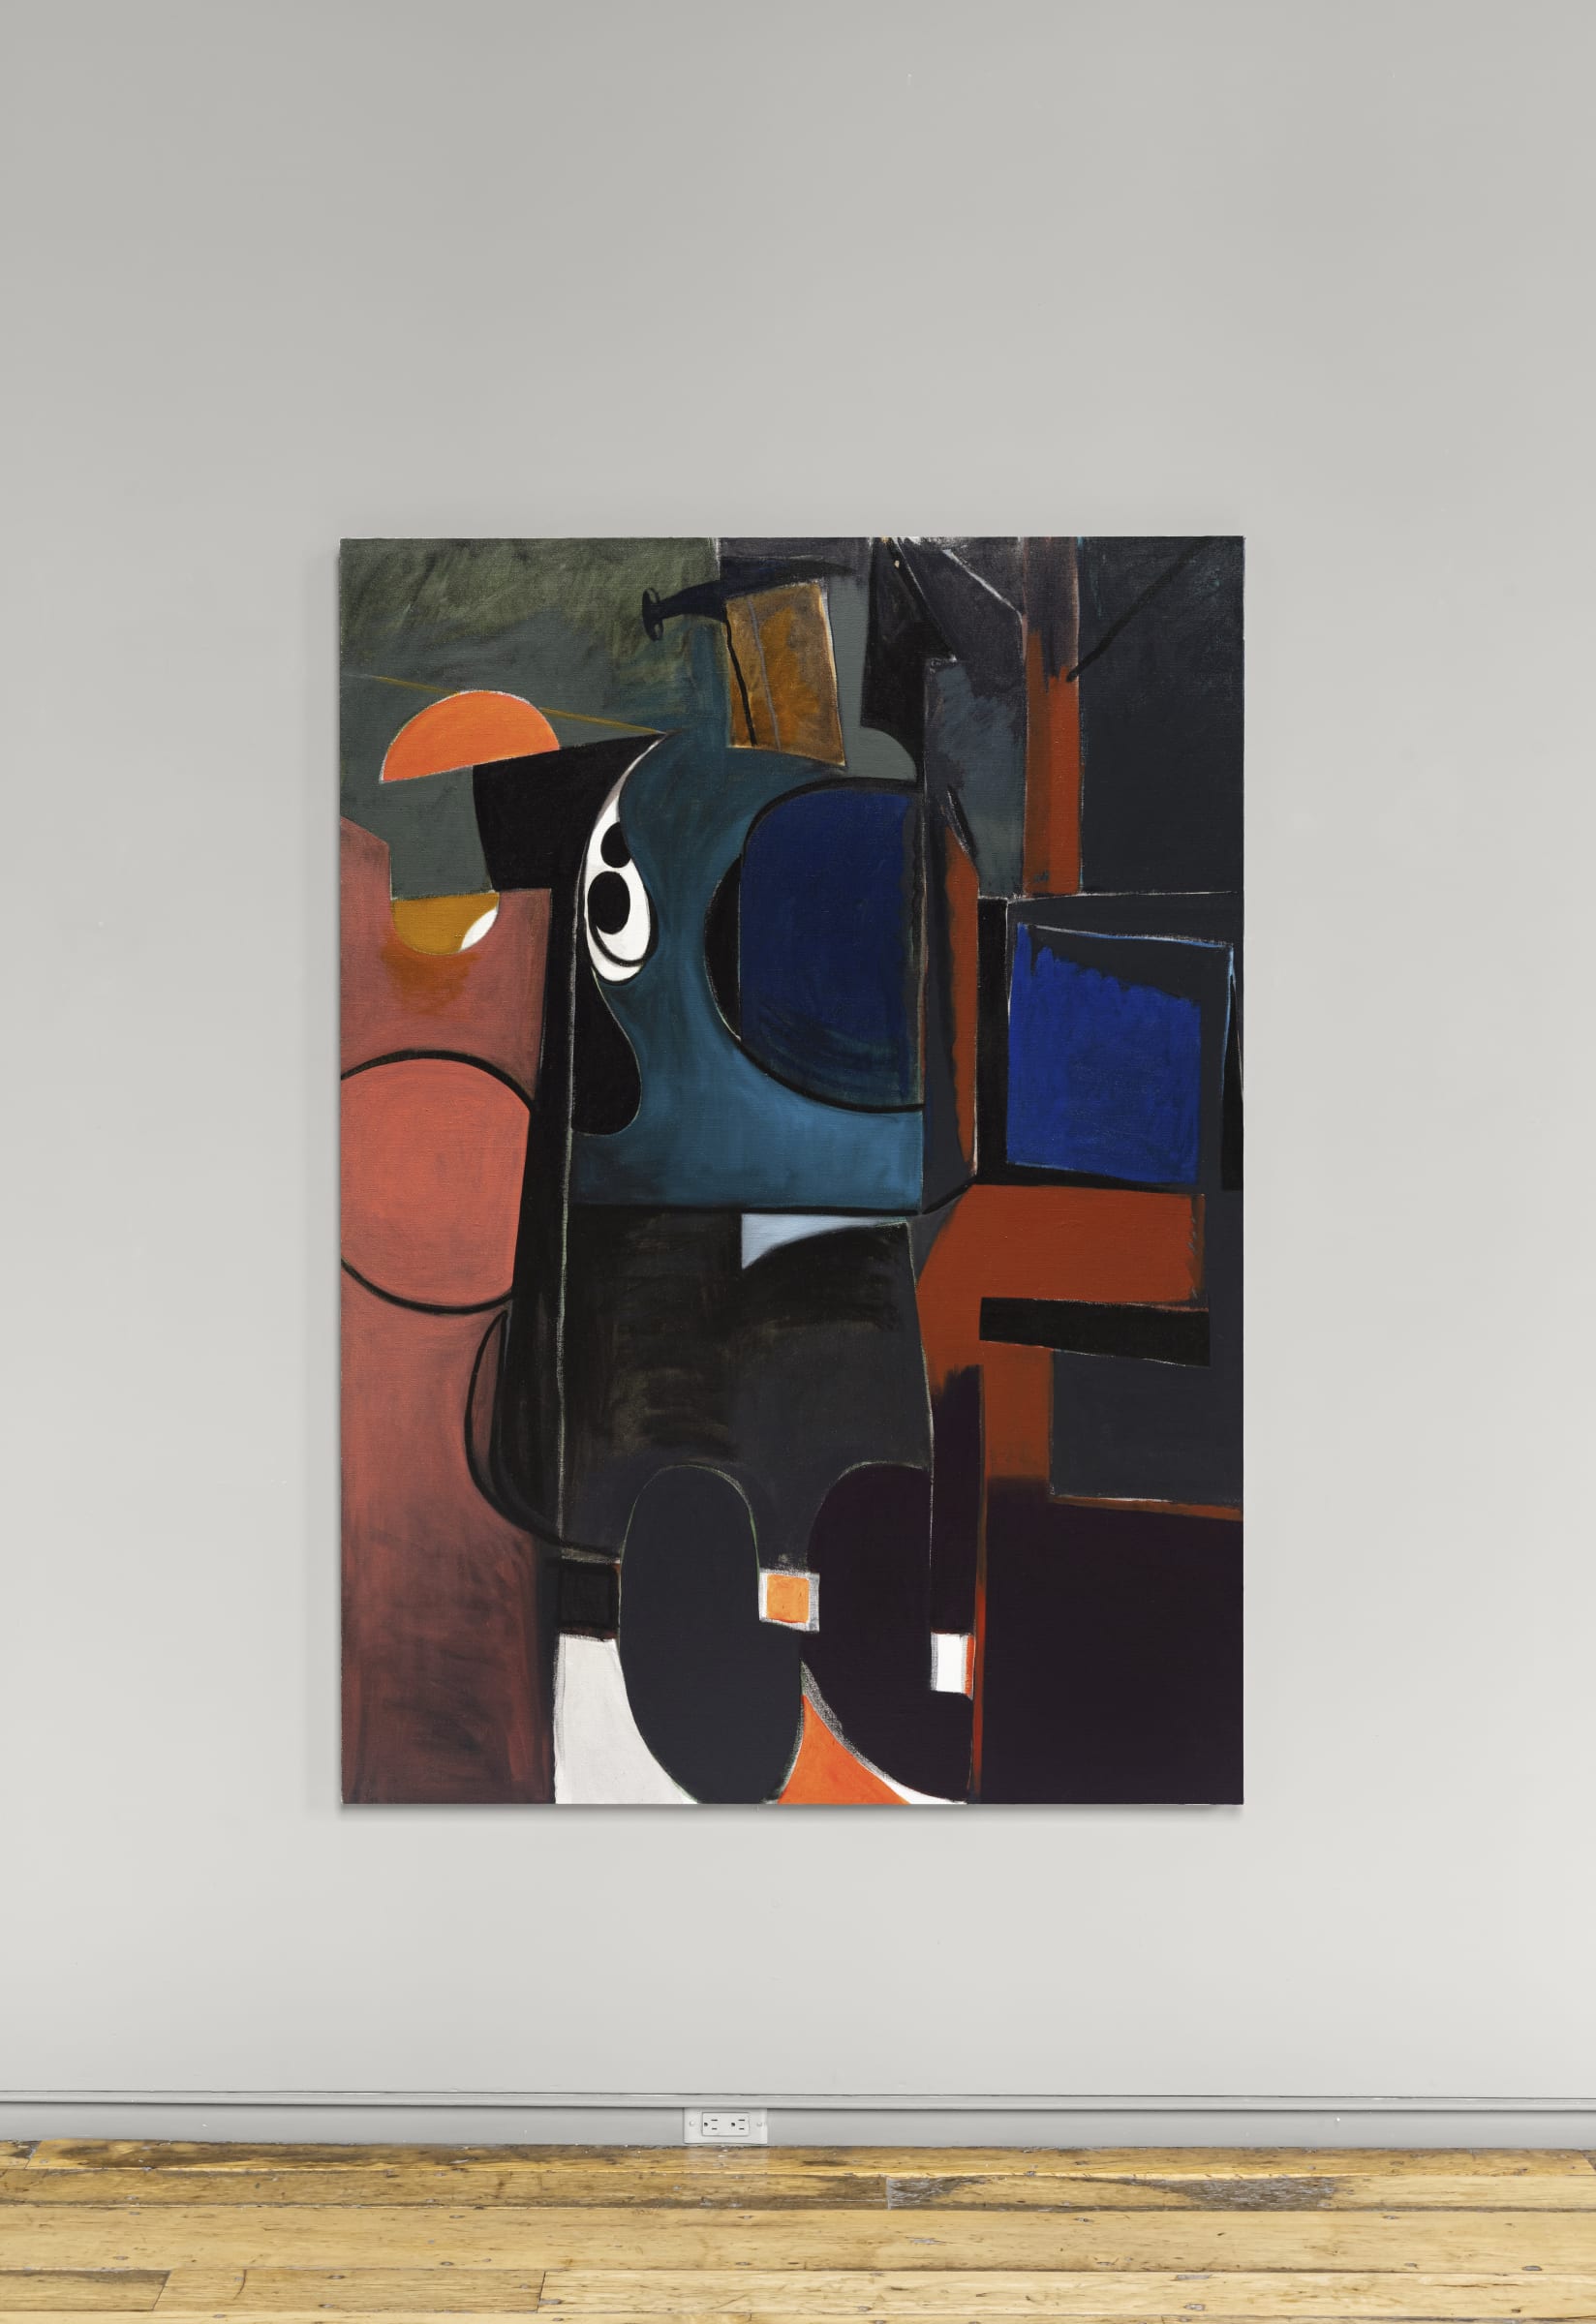 Leopold Plotek, Content, pas content, content, 2019, oil on canvas, 70 x 50 in.